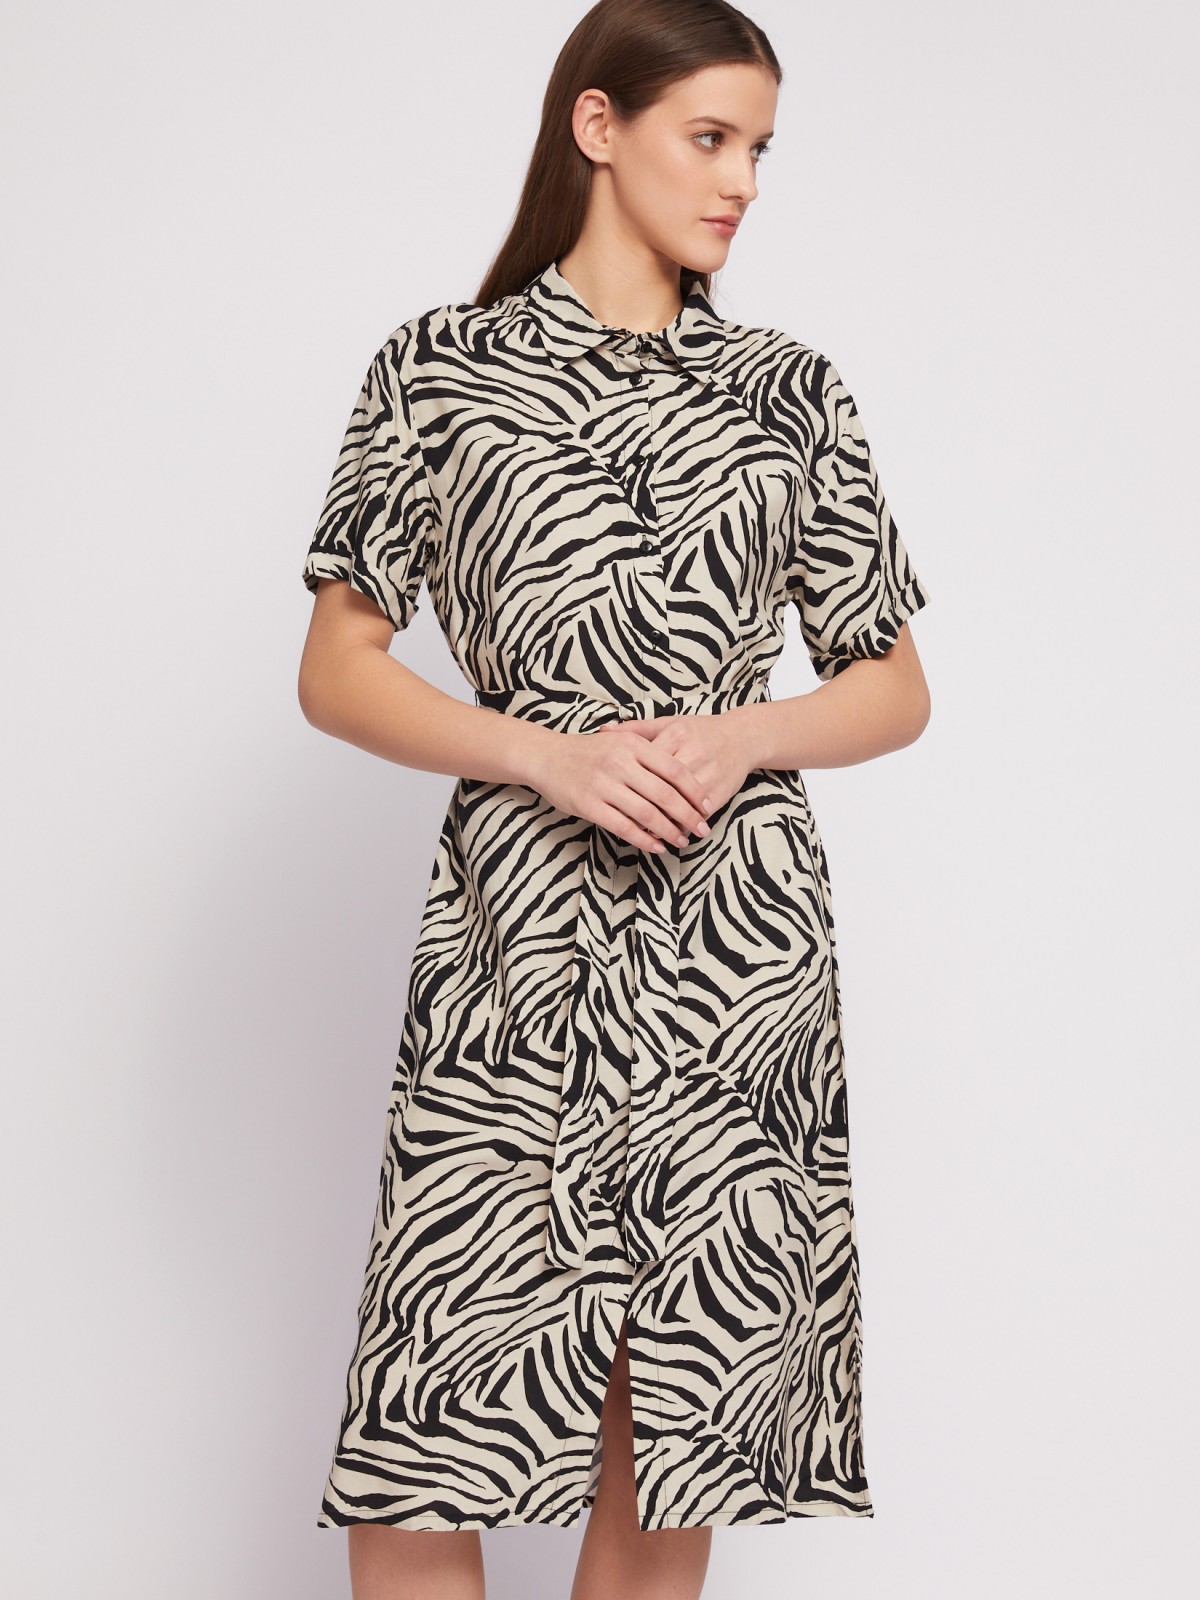 Платье-рубашка с поясом и принтом в полоску zolla N24218259013, цвет черный, размер S - фото 4